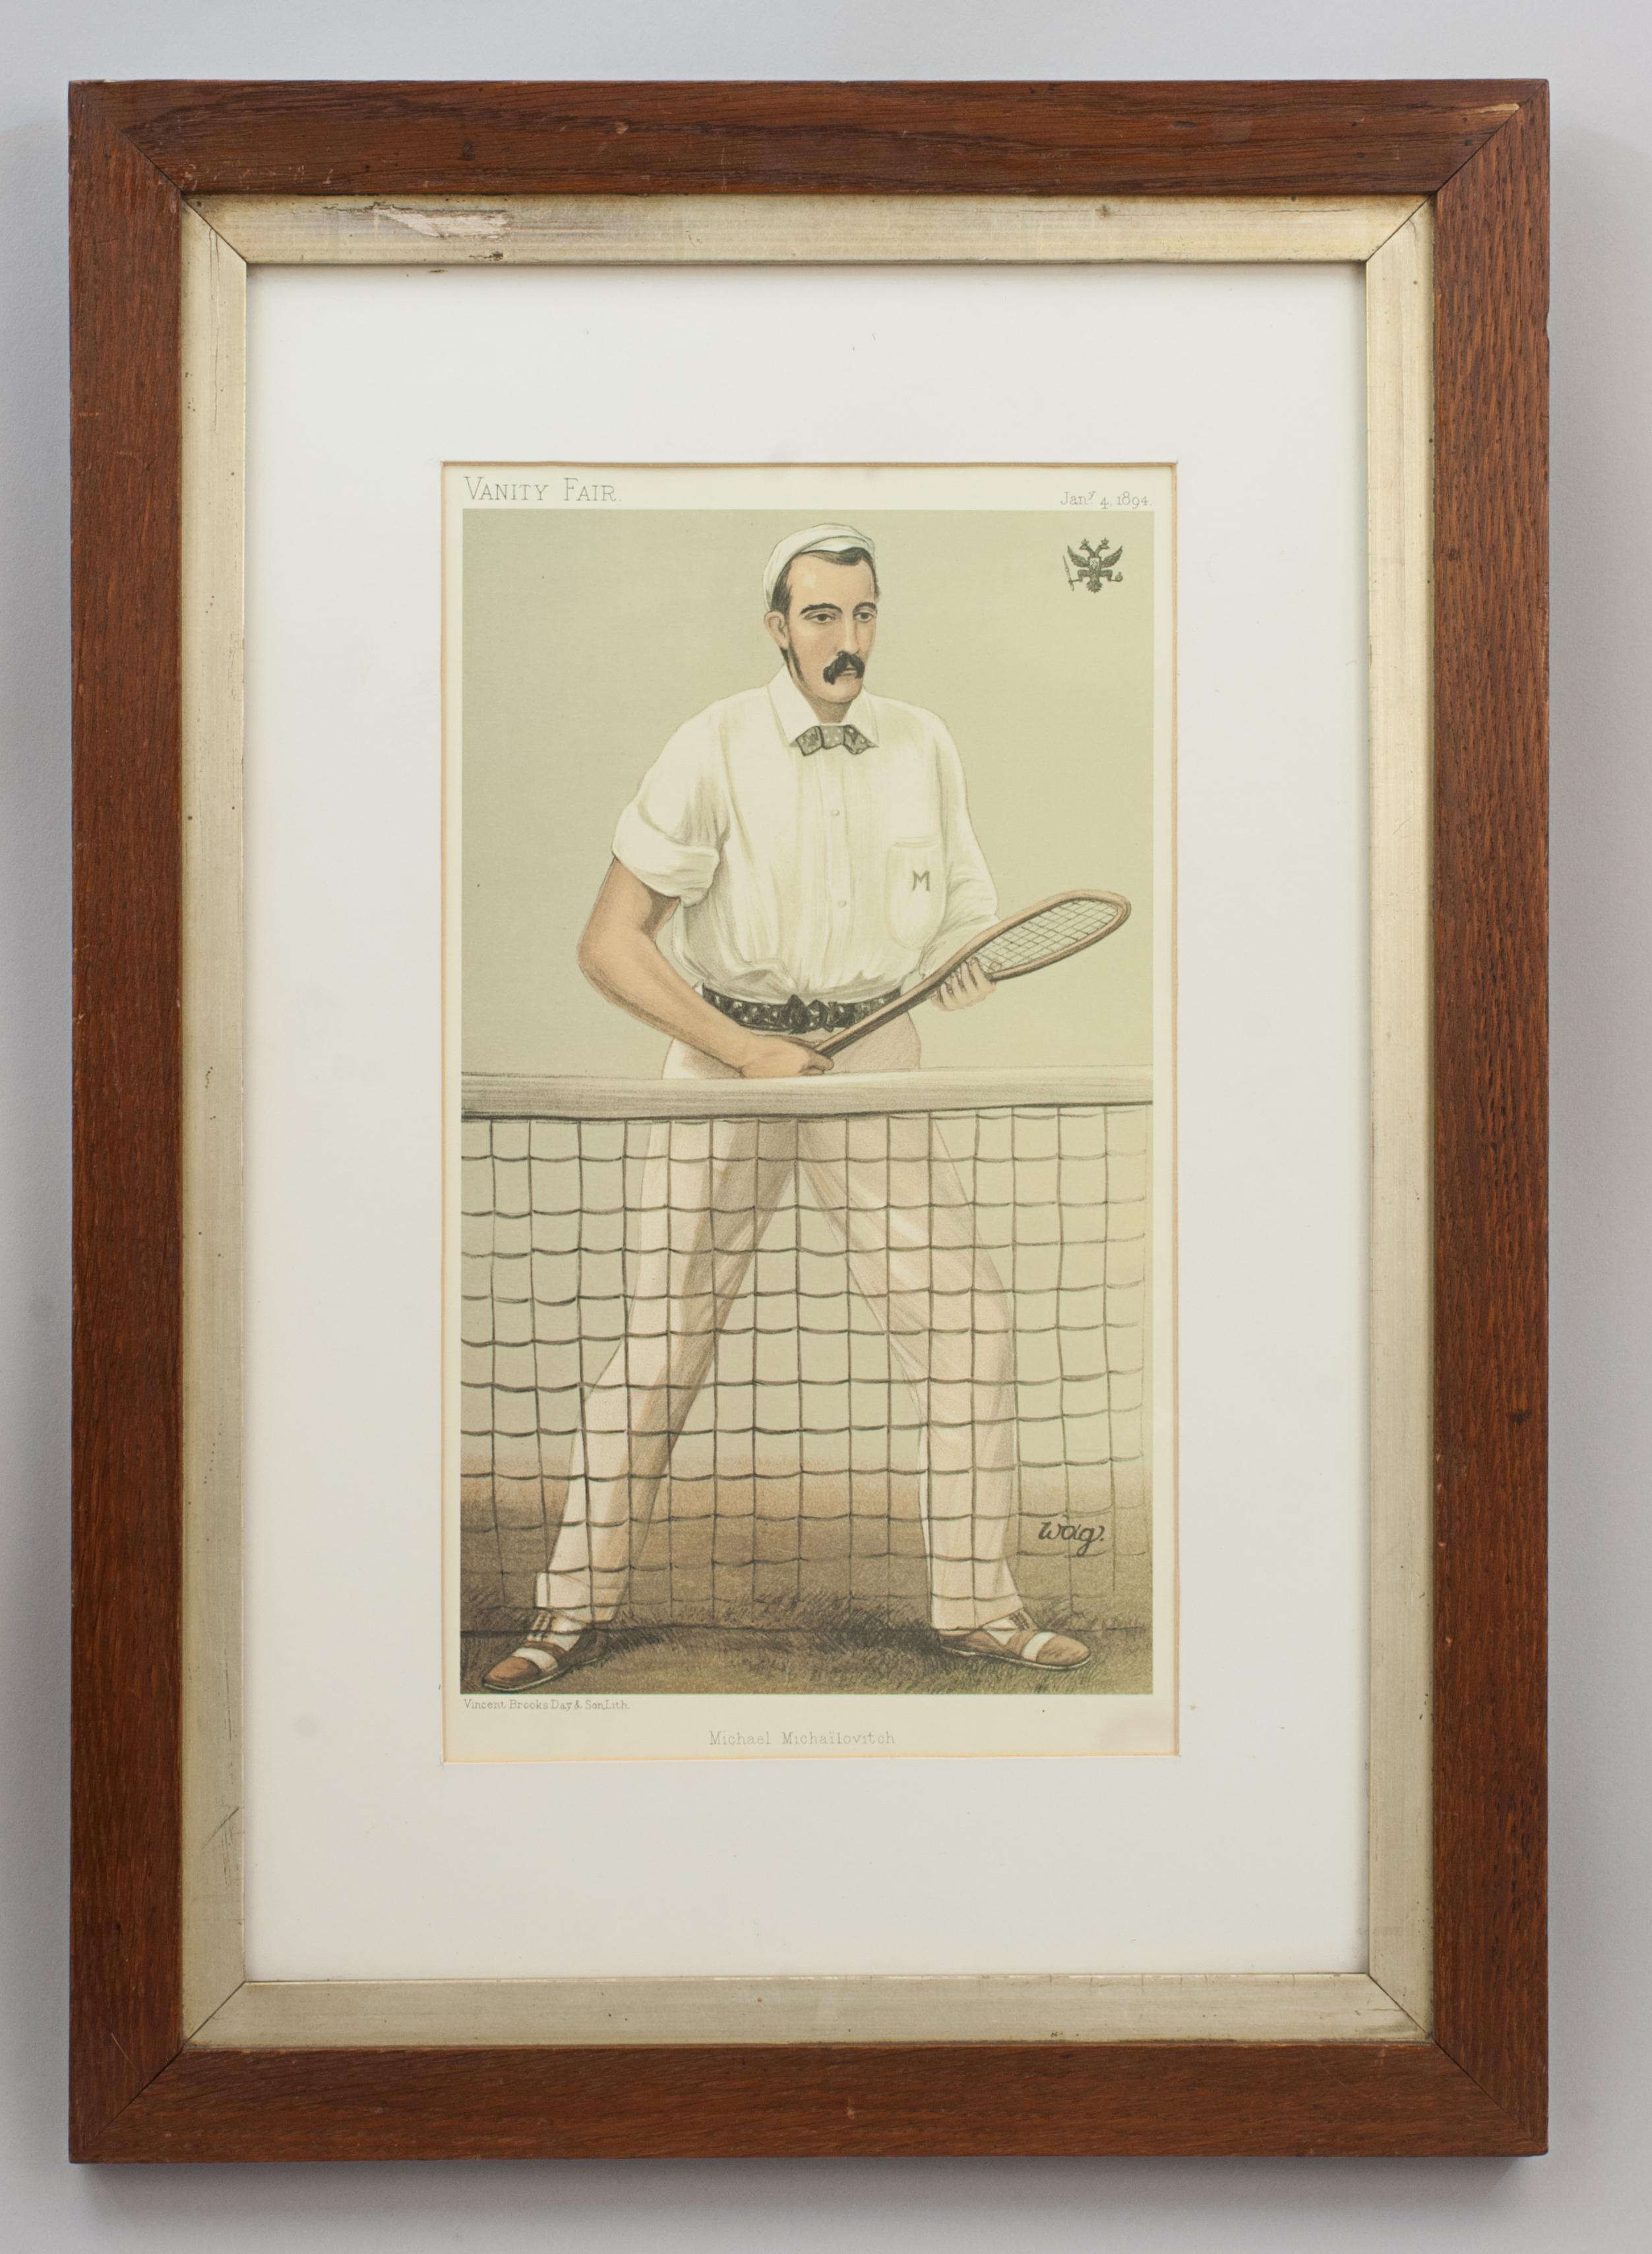 Vanity Fair Lawn Tennis, Michael Michailovitch, Grand Duc de Russie.
Estampe chromolithographique publiée le 4 janvier 1894 par Vincent Brooks, Day & Son Ltd. Lith. pour Vanity Fair. L'image est intitulée 